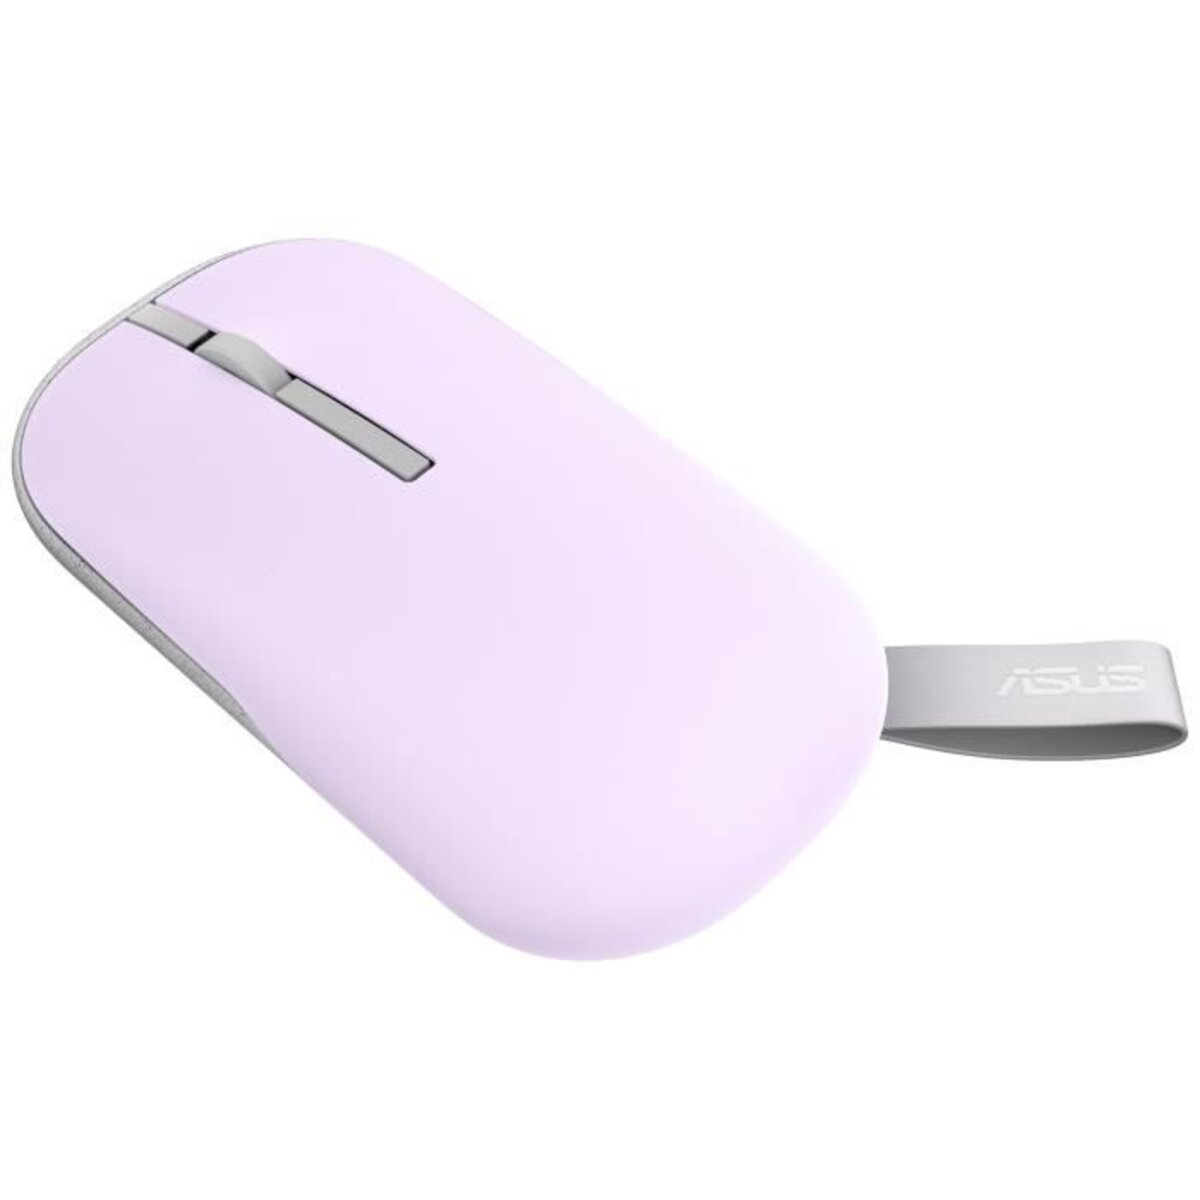 Souris sans fil - asus wireless mouse md100 - ambidextre - coloris vert -  La Poste